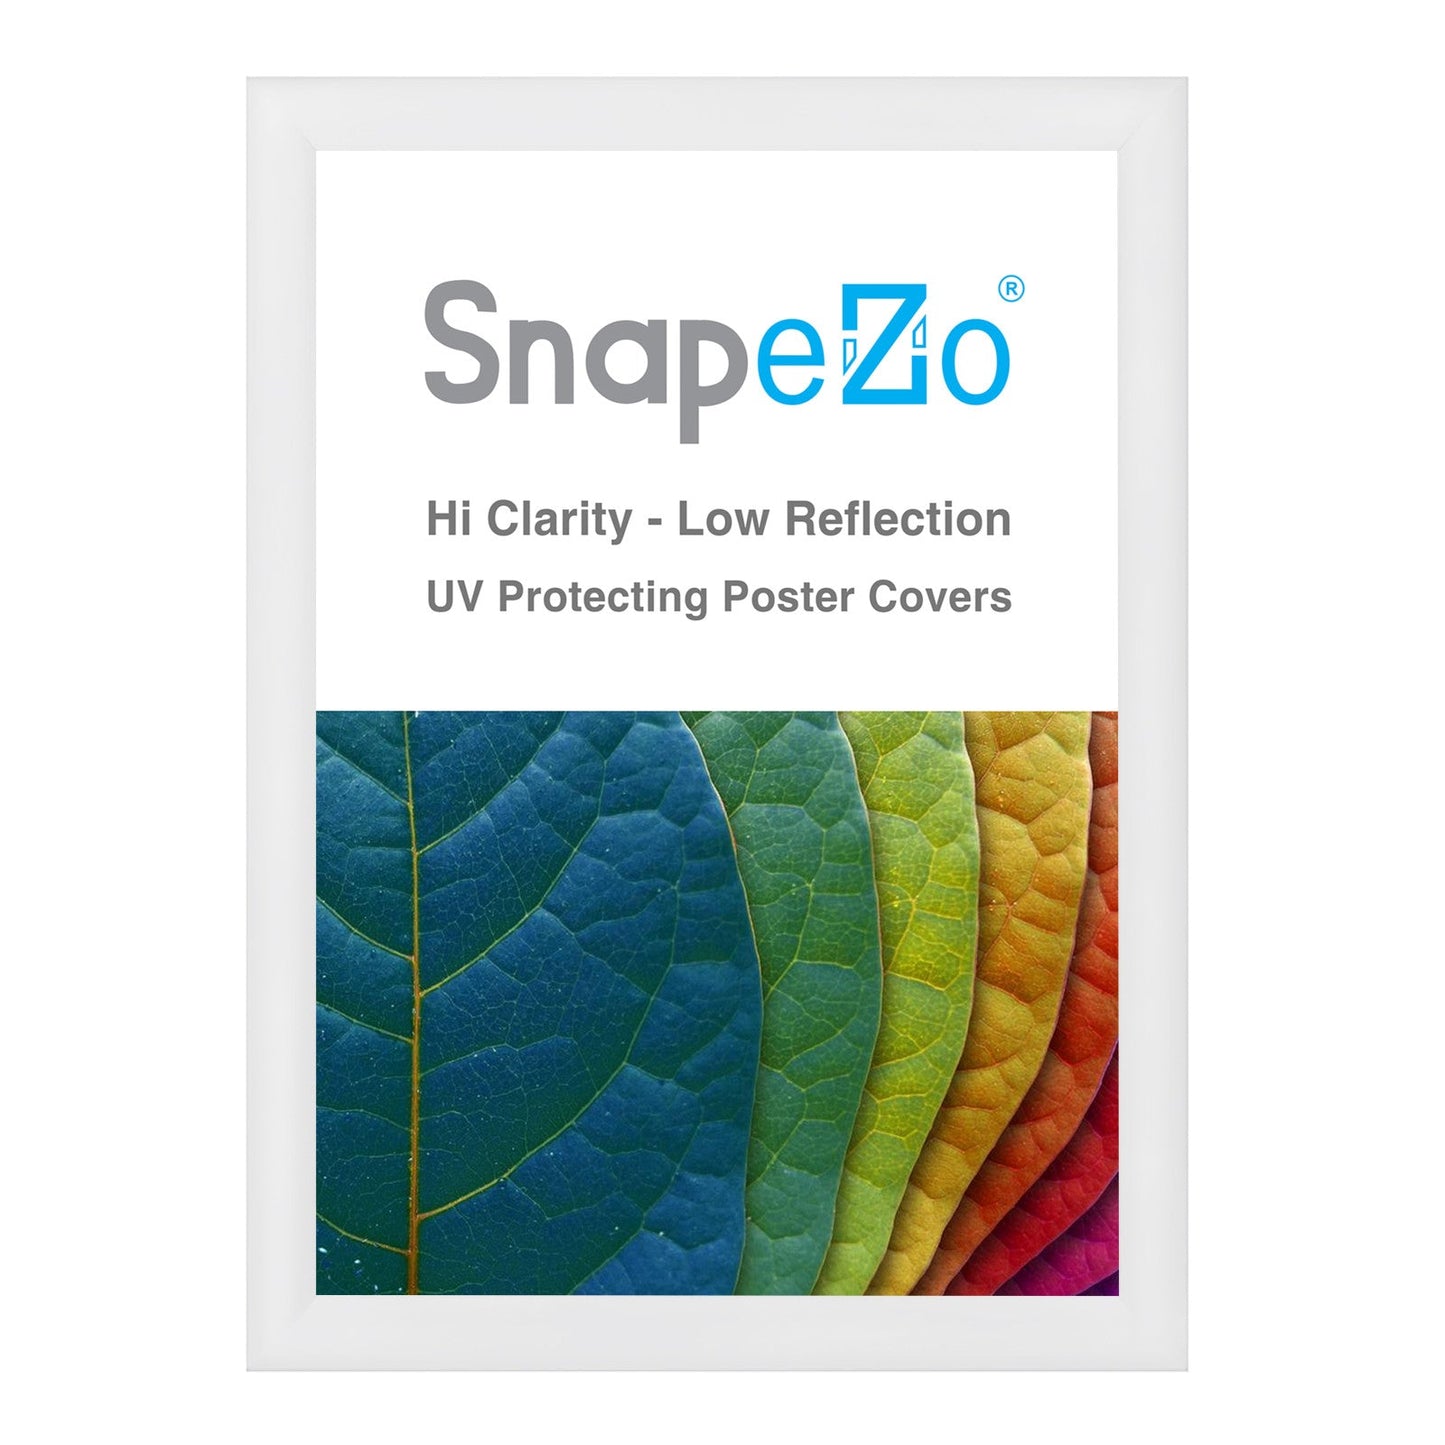 22x30 White SnapeZo® Snap Frame - 1.2" Profile